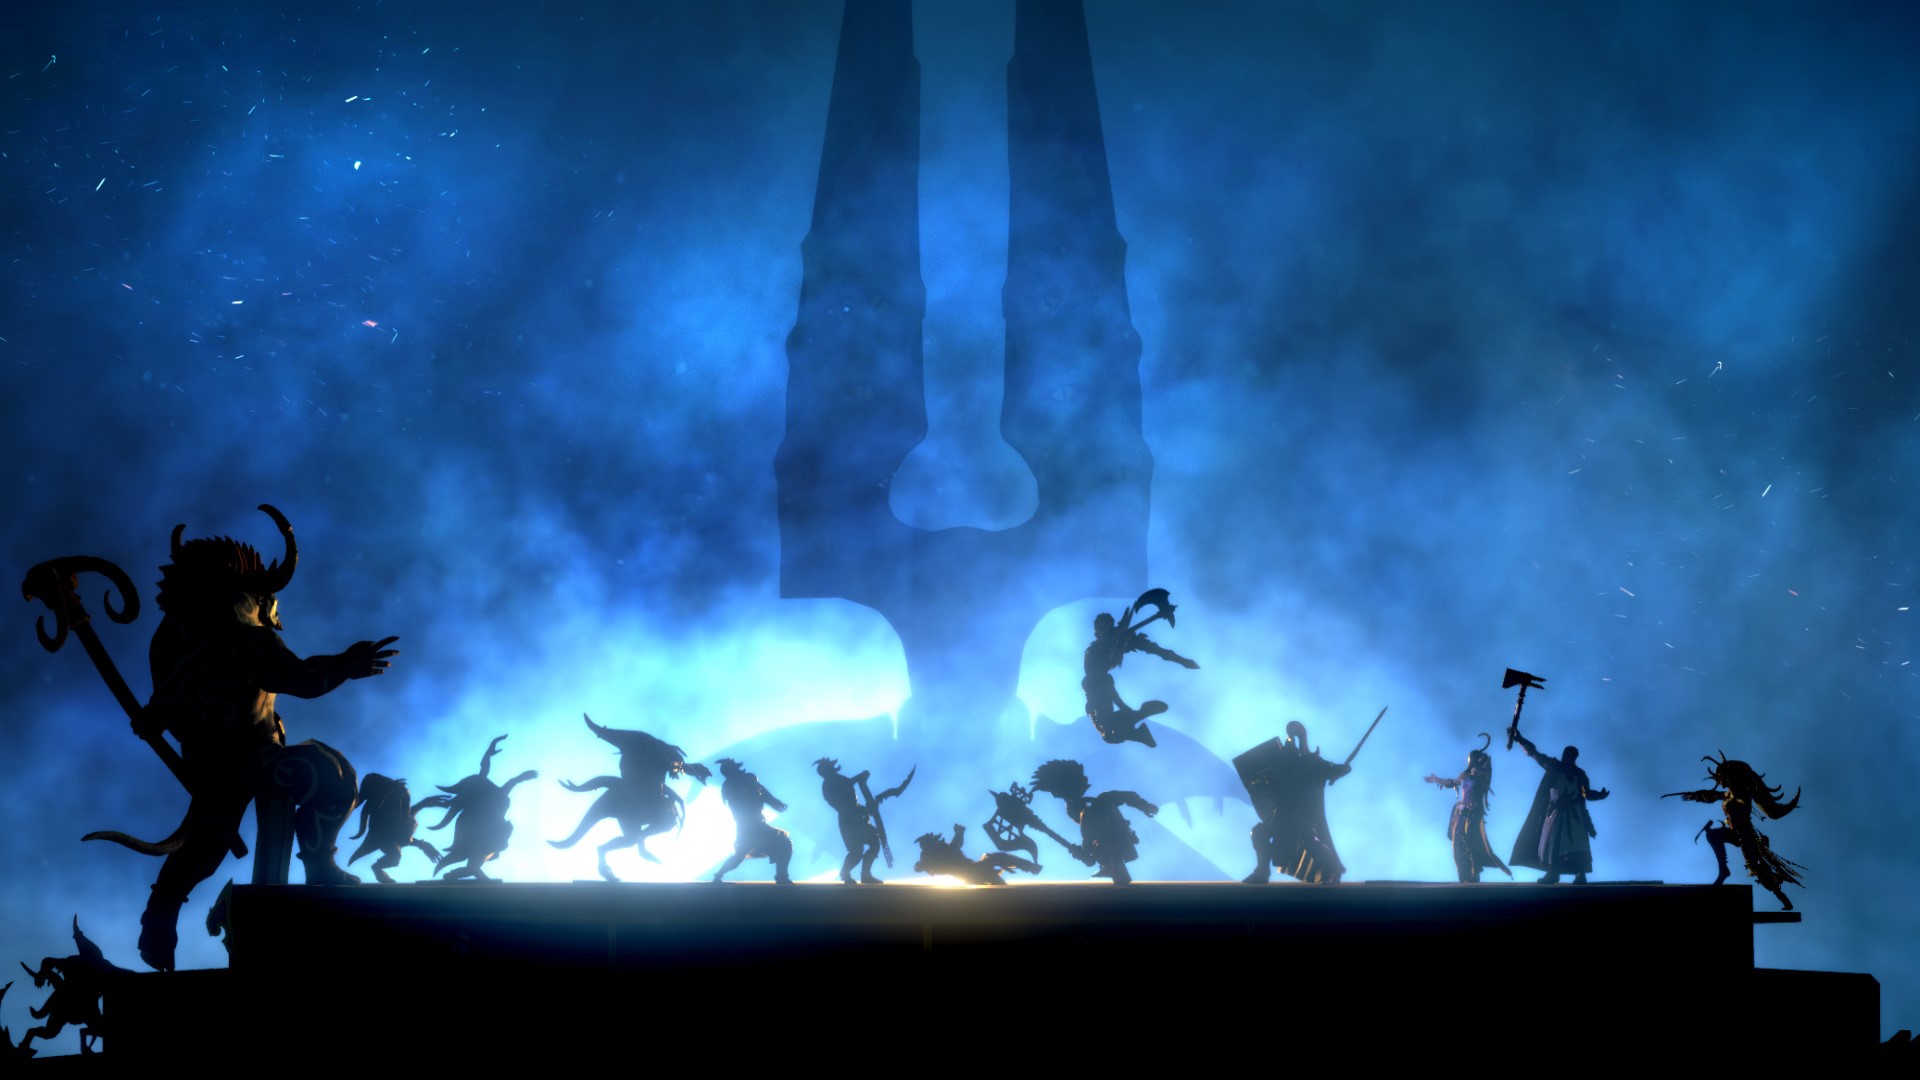 Beste mobile strategispill: Warhammer Quest: Silver Tower. Bildet viser omrissene til en rekke krigere og monstre i mørket